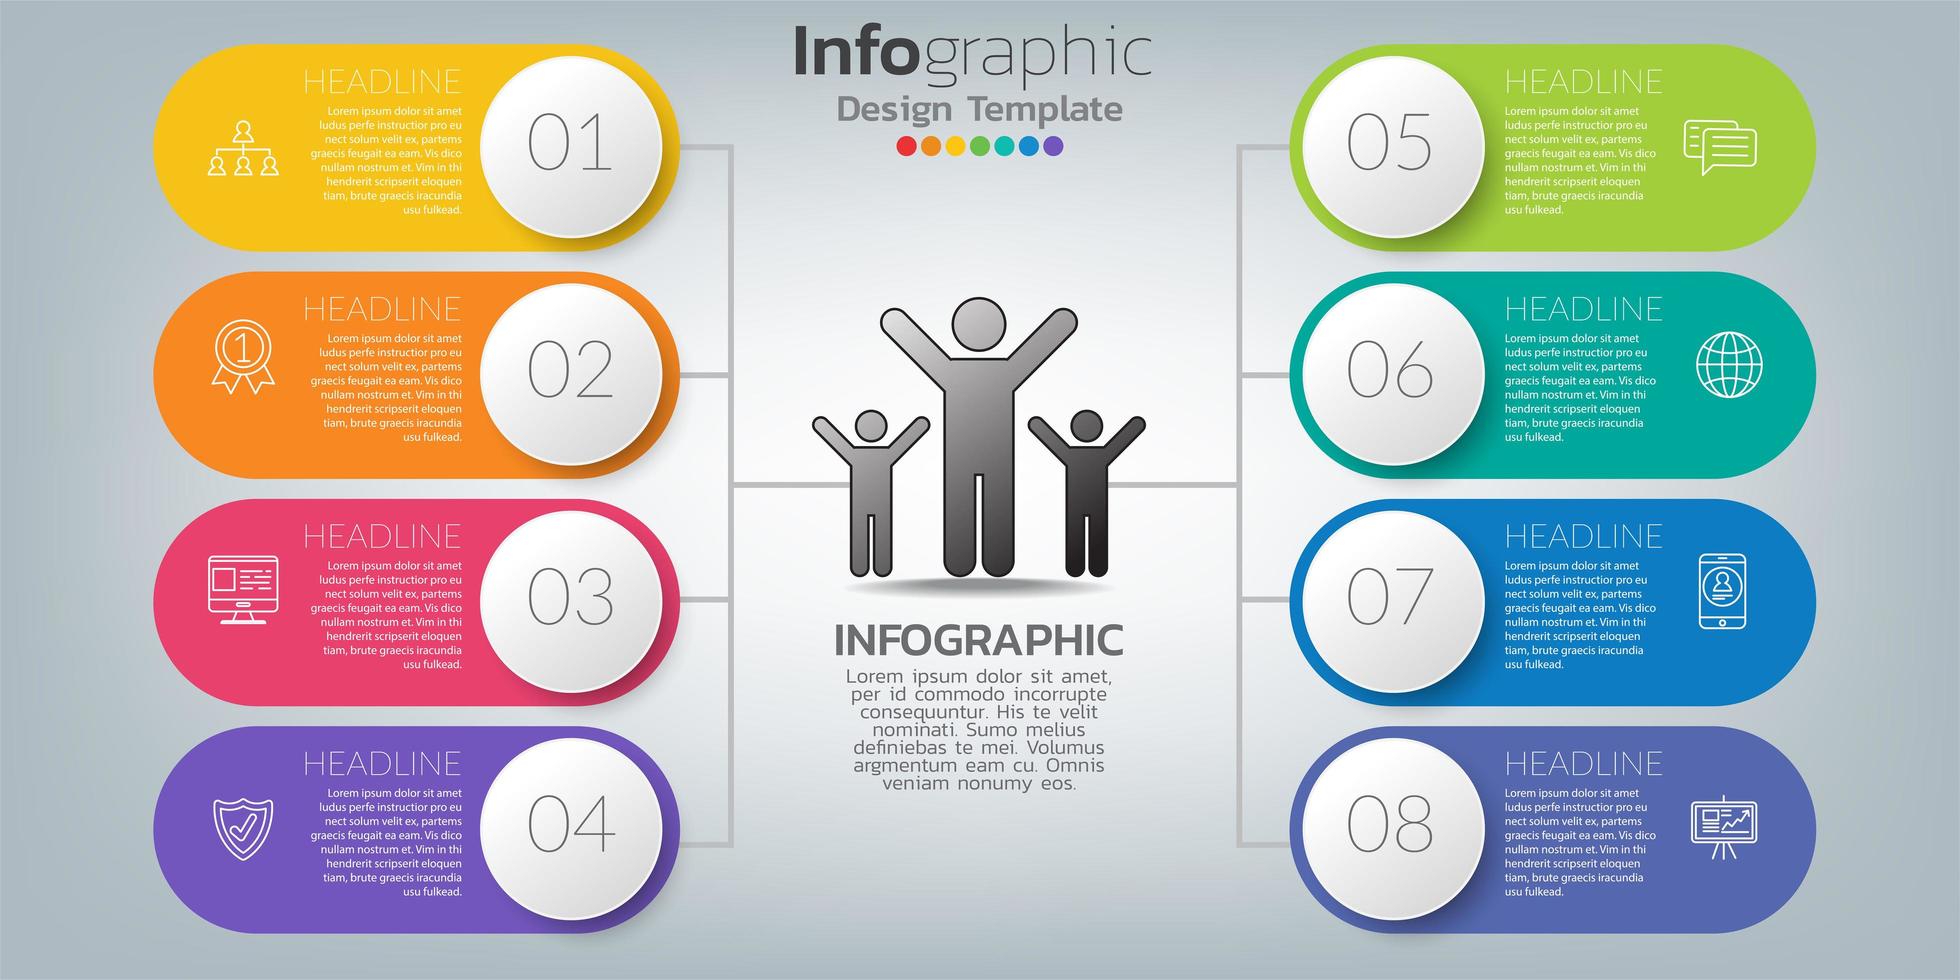 Le vecteur de conception infographique et les icônes peuvent être utilisés pour la mise en page du flux de travail, le diagramme, le rapport, la conception Web. concept d'entreprise avec des options, des étapes ou des processus.